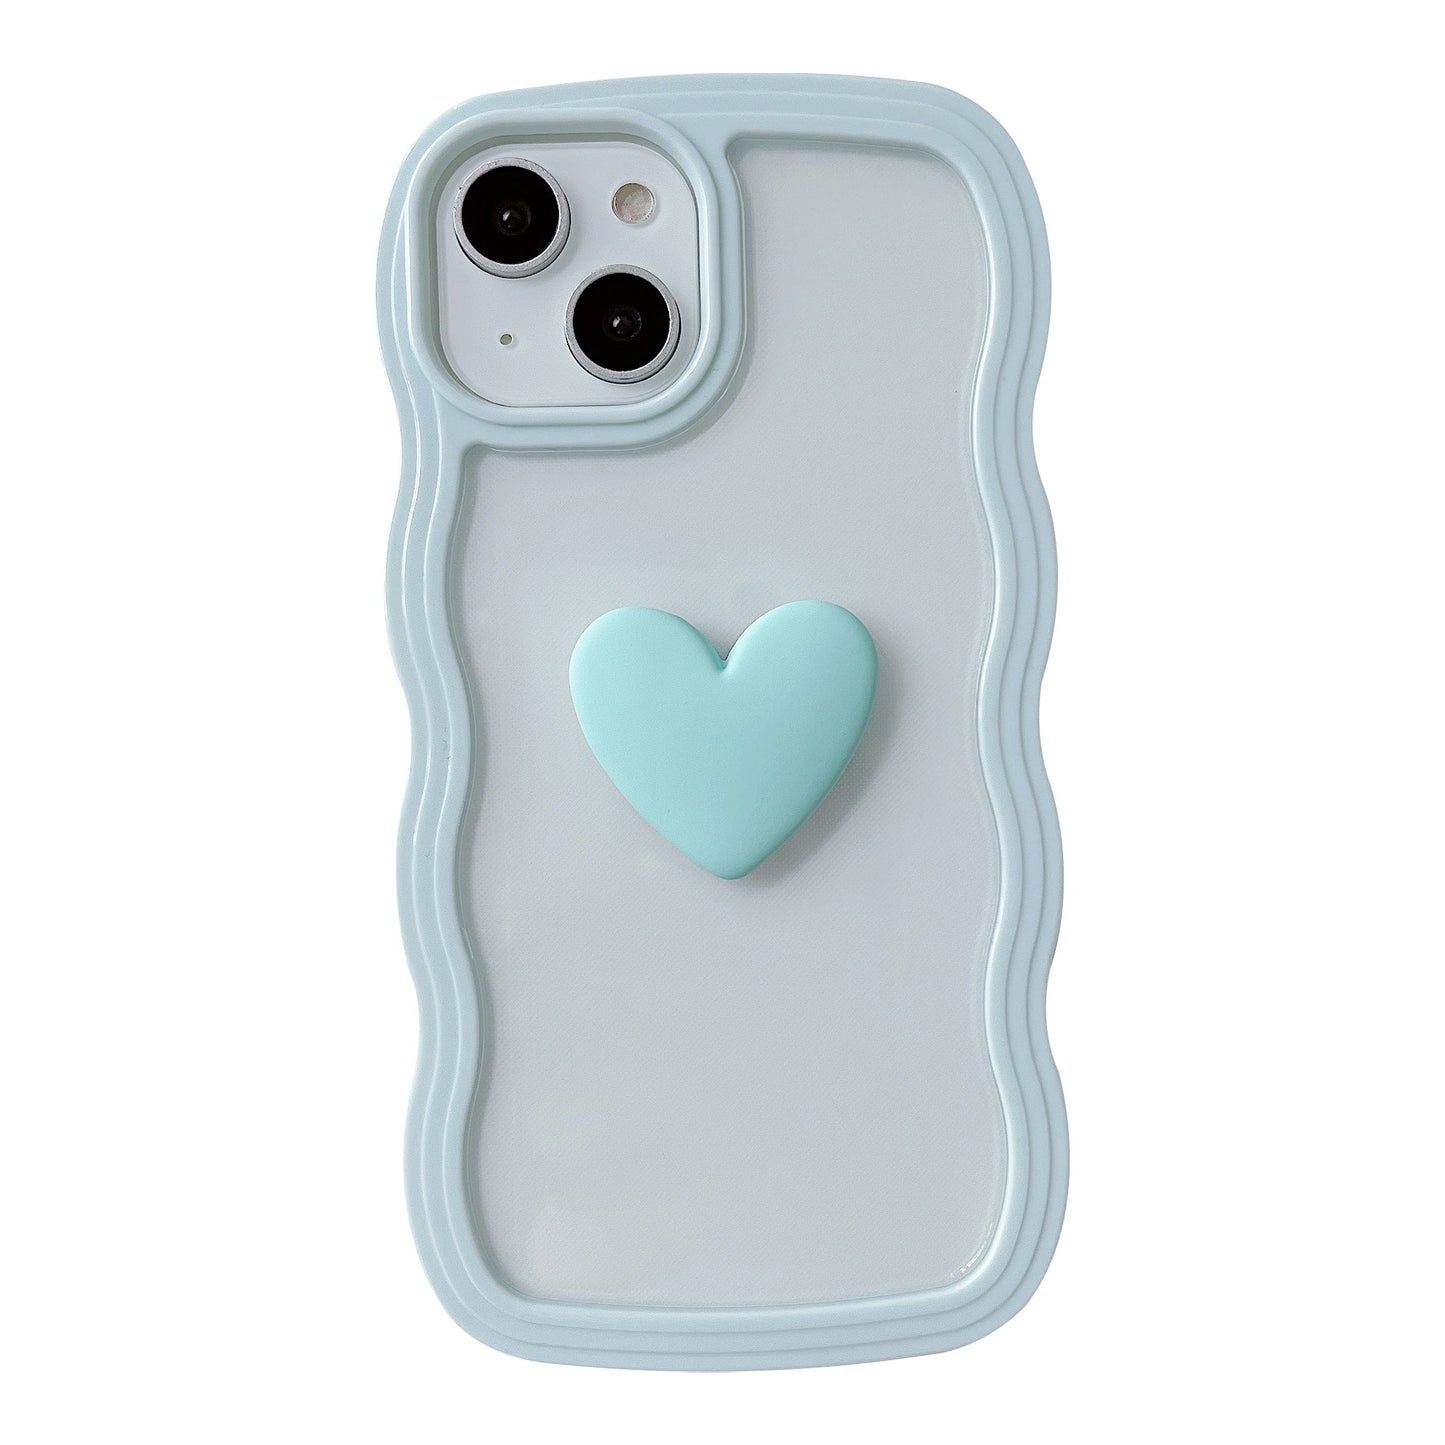 Marco ondulado rizado 3D Love Heart Clear Candy Color Compatible con iPhone Case